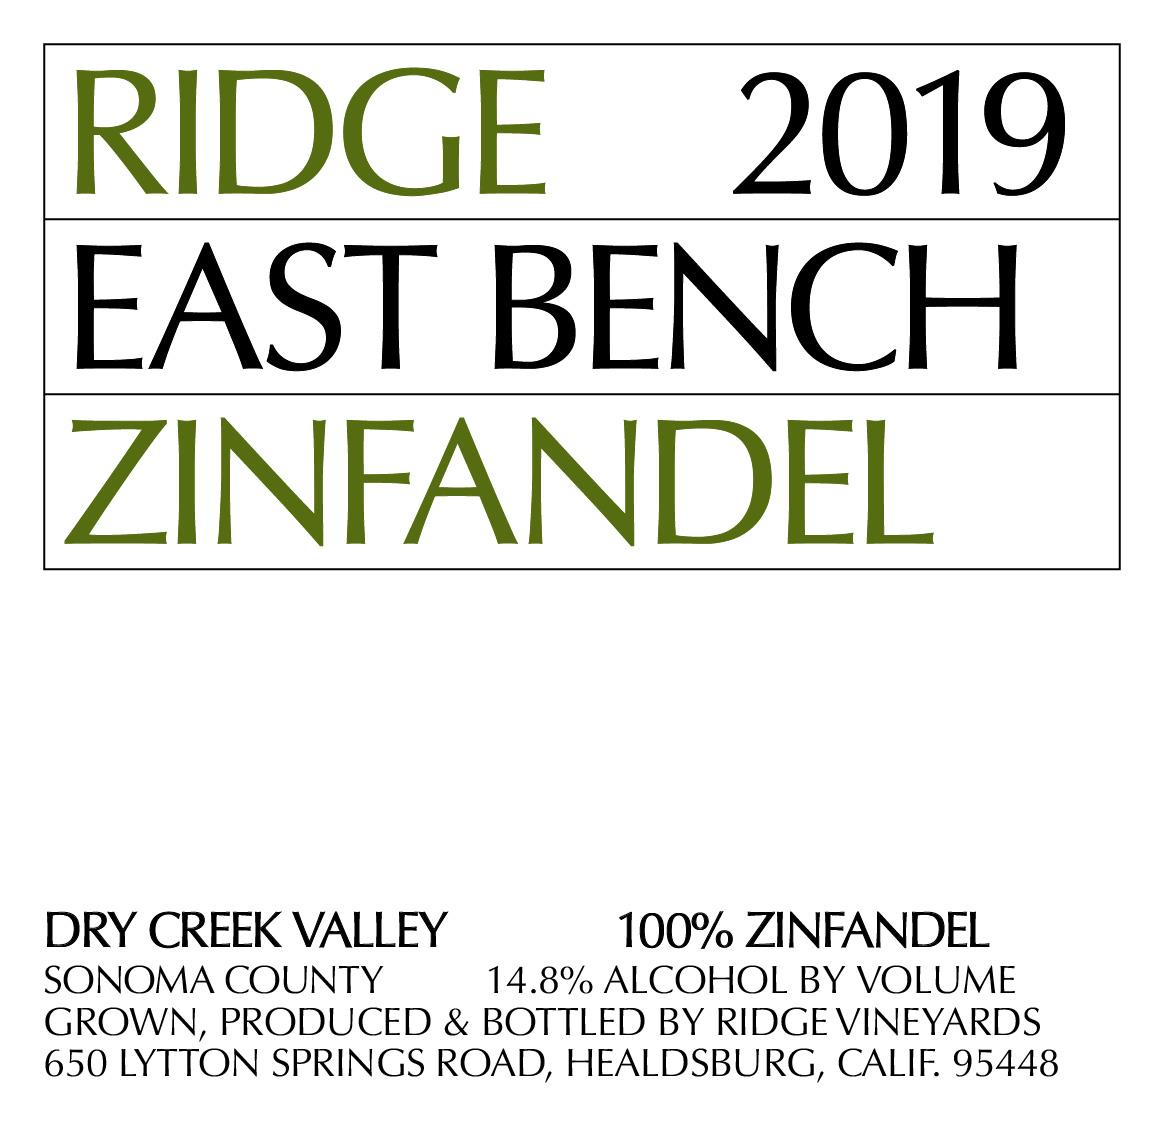 2019 Ridge Zinfandel East Bench image